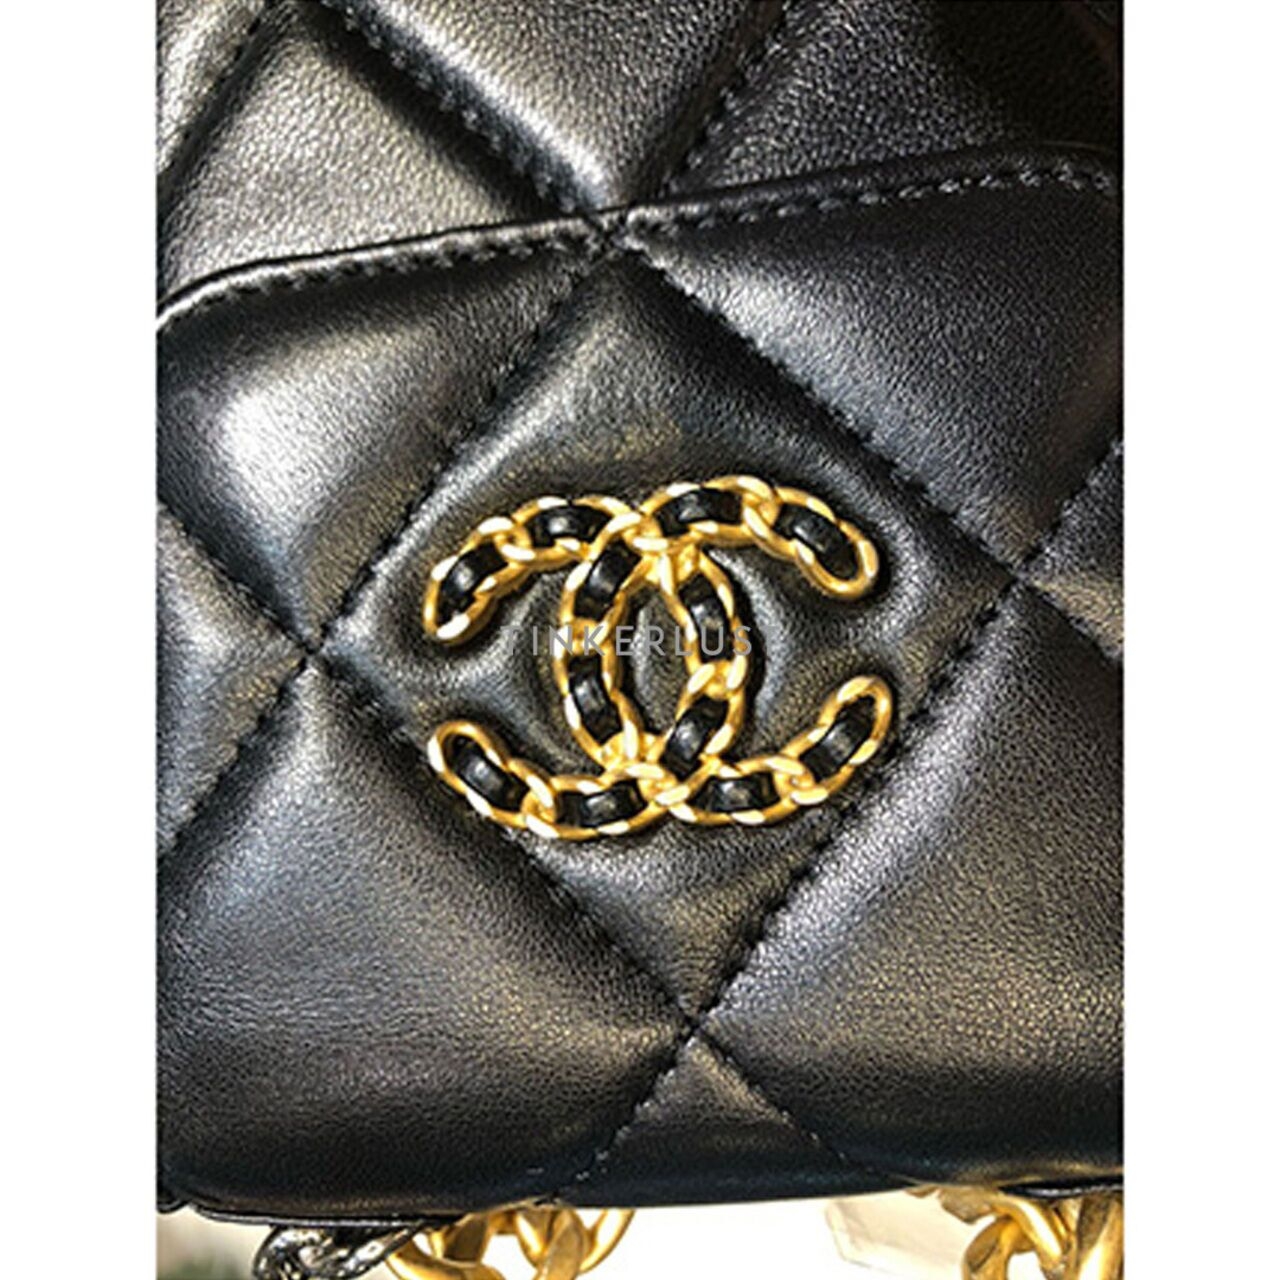 Chanel C19 Phone bag Black GHW Chip Sling Bag